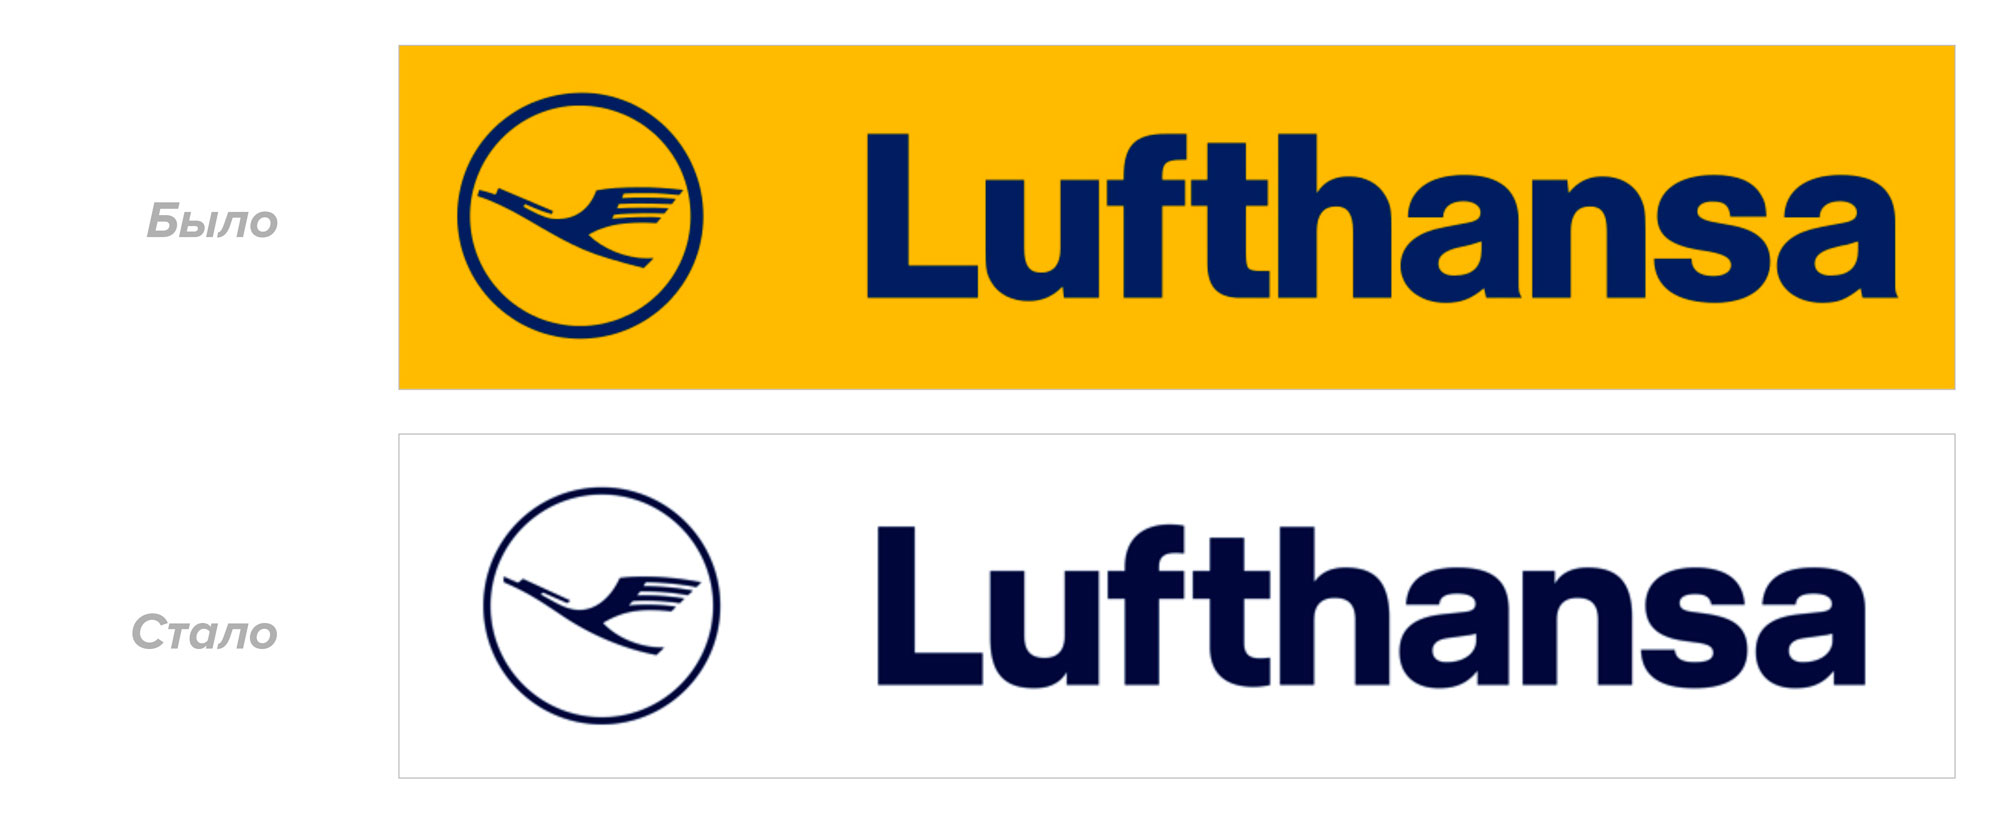 Lufthansa new logo btw